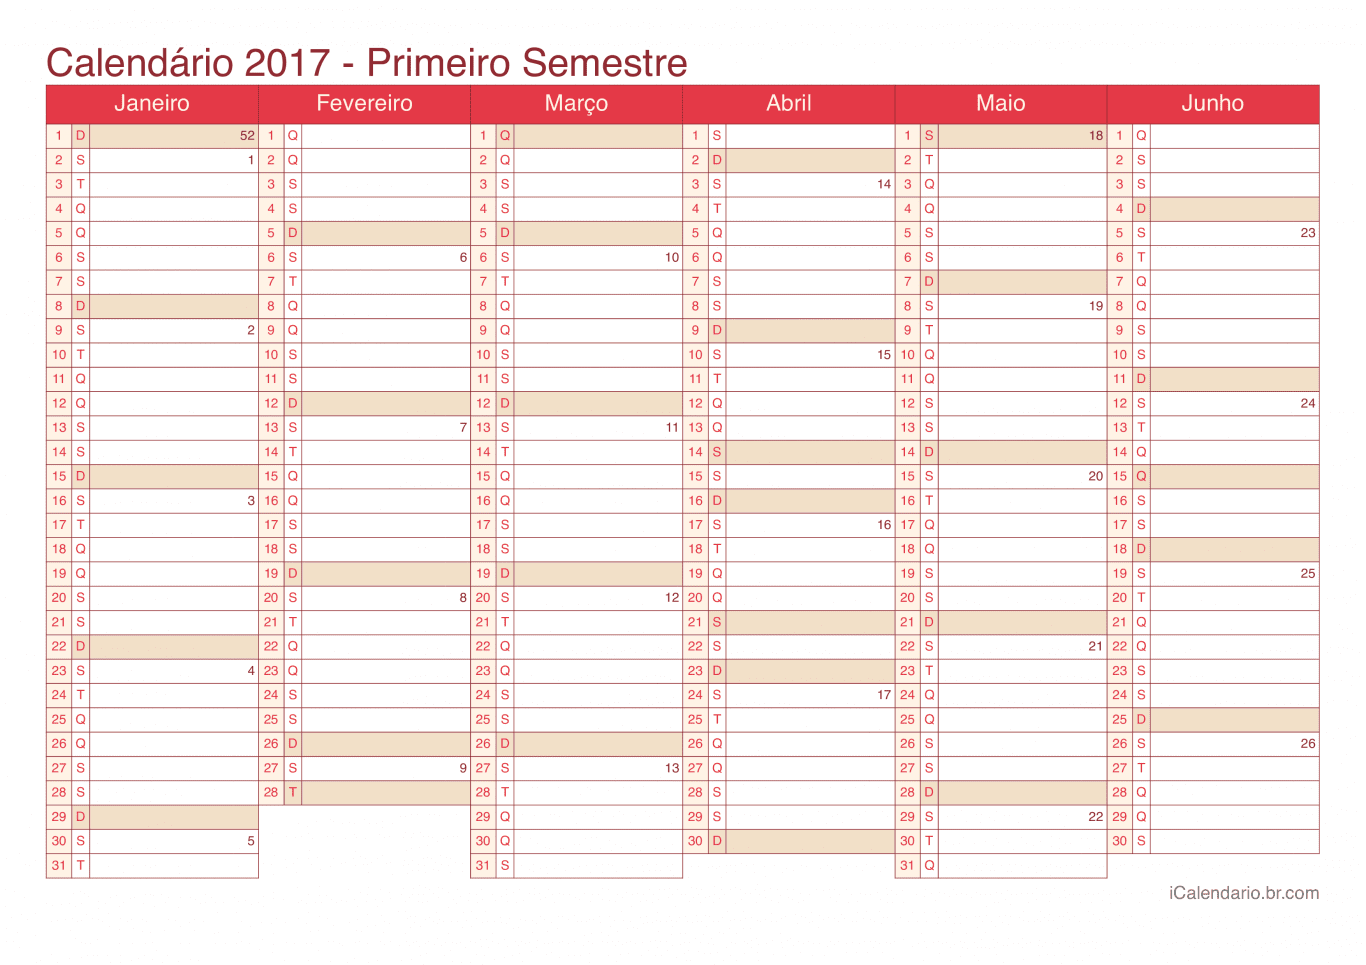 Calendário por semestre com números da semana 2017 - Cherry